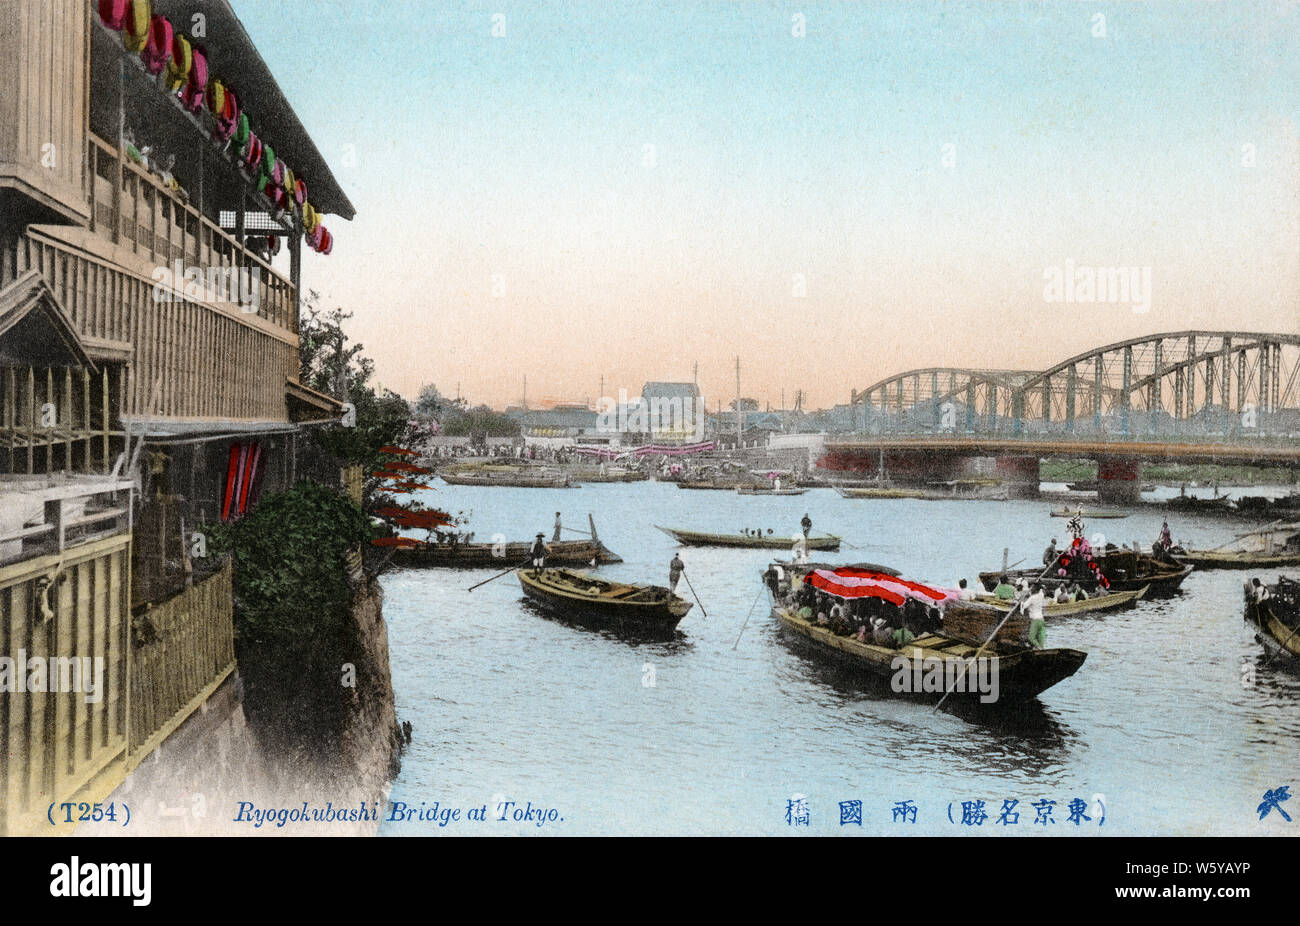 [ 1900 - Puente Ryogokubashi Japón, Tokio ] - Ryogokubashi puente que cruce el río Sumidagawa en Tokio. La construcción del primer Ryogokubashi fue comenzado en 1659 (Manji 2). El puente su nombre significa "dos provincias" ya que conecta las provincias de Shimosa y Musashi. Vintage del siglo xx postal. Foto de stock